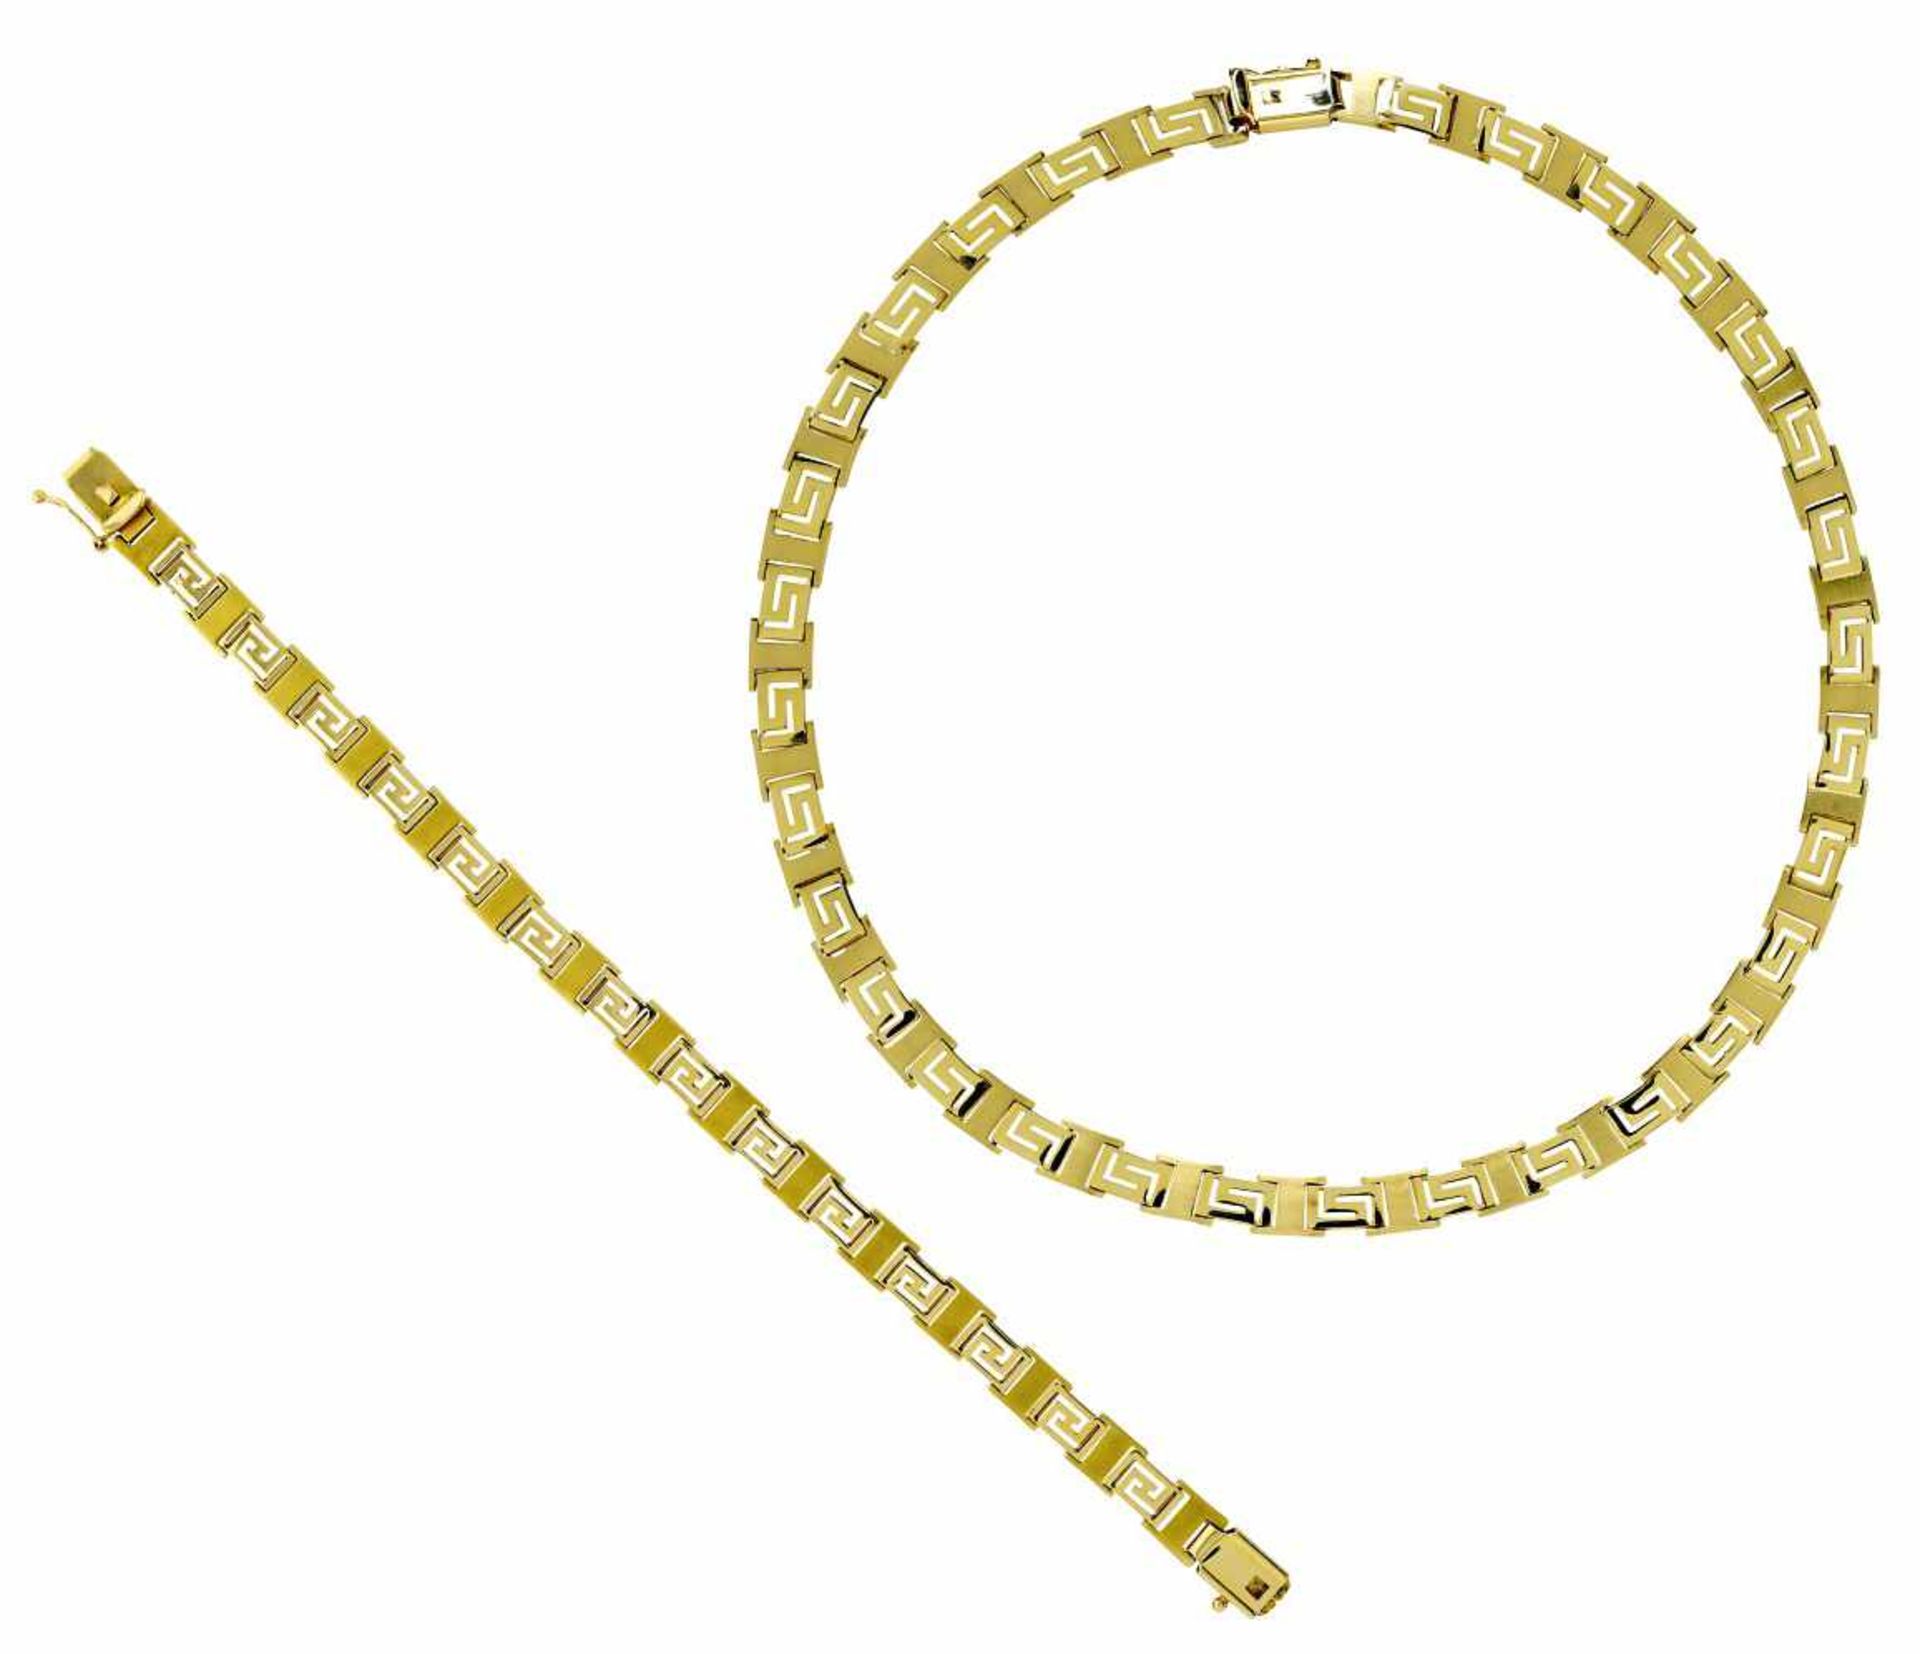 Collier und Armband14 K GG, Marke (585). Umlaufend jeweils teilsatinierte Mäanderform. L. 19,5 cm